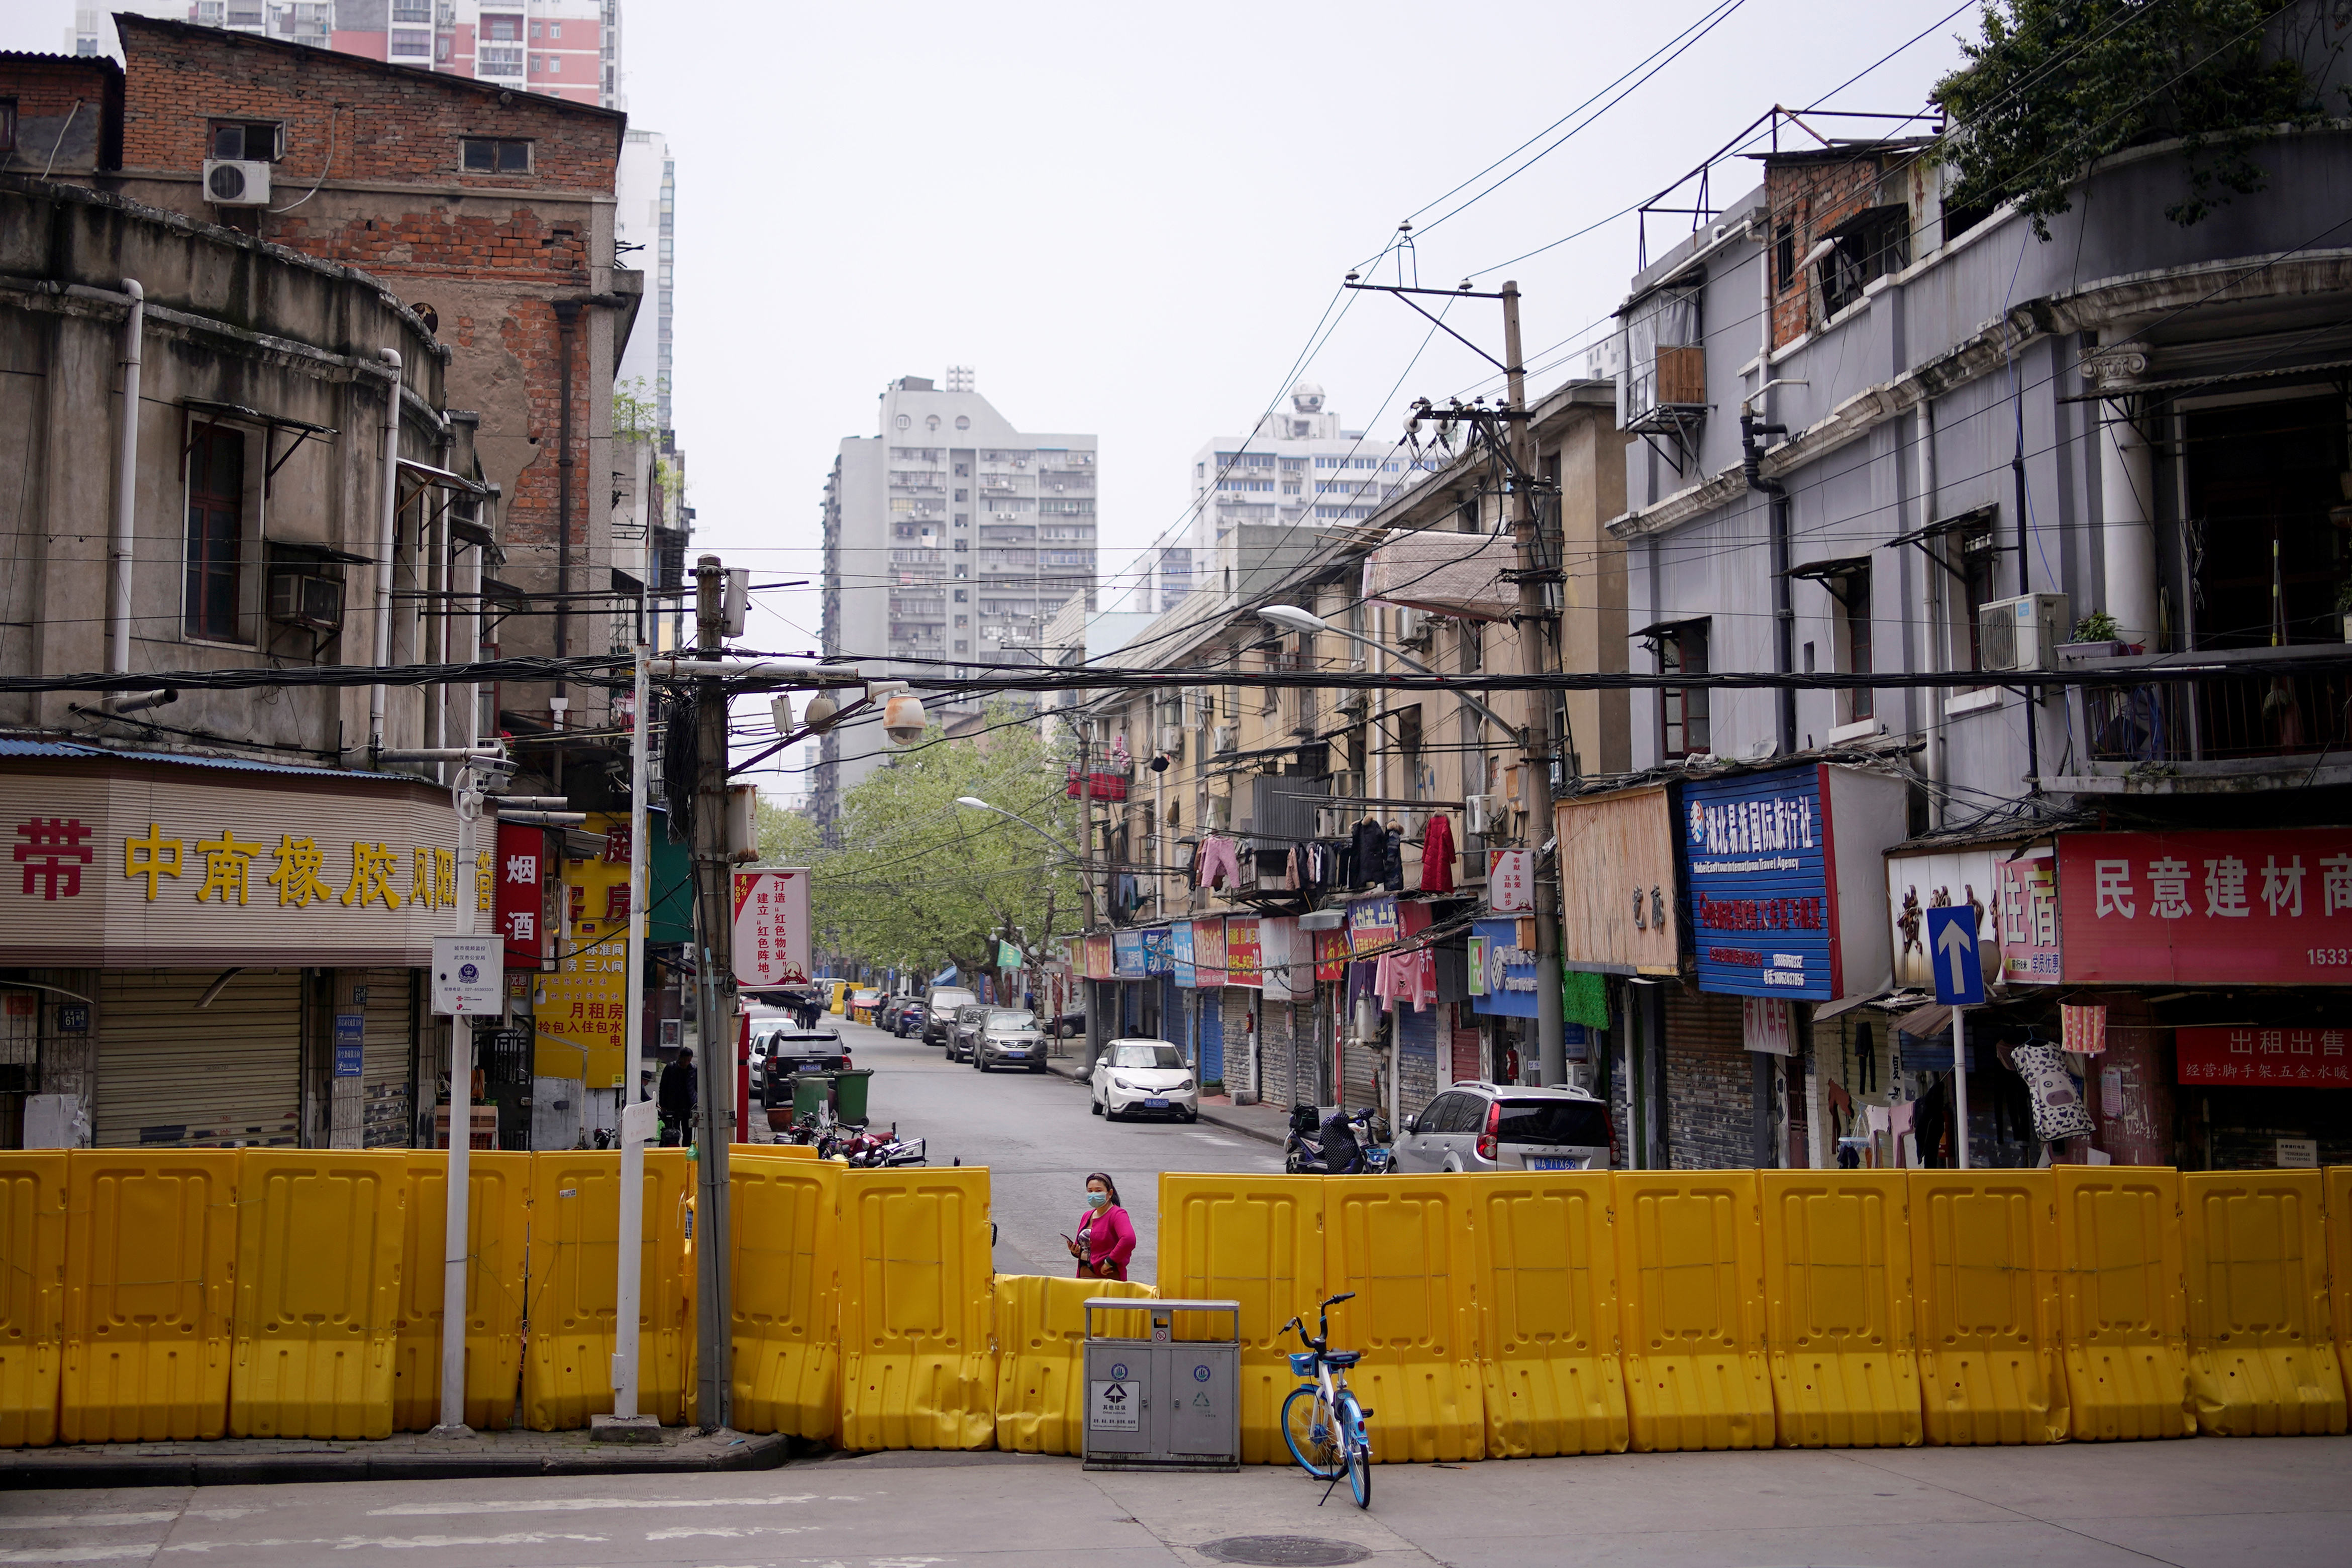 Desinfección, higiene y mascarilla obligatorios para frenar el virus en Wuhan